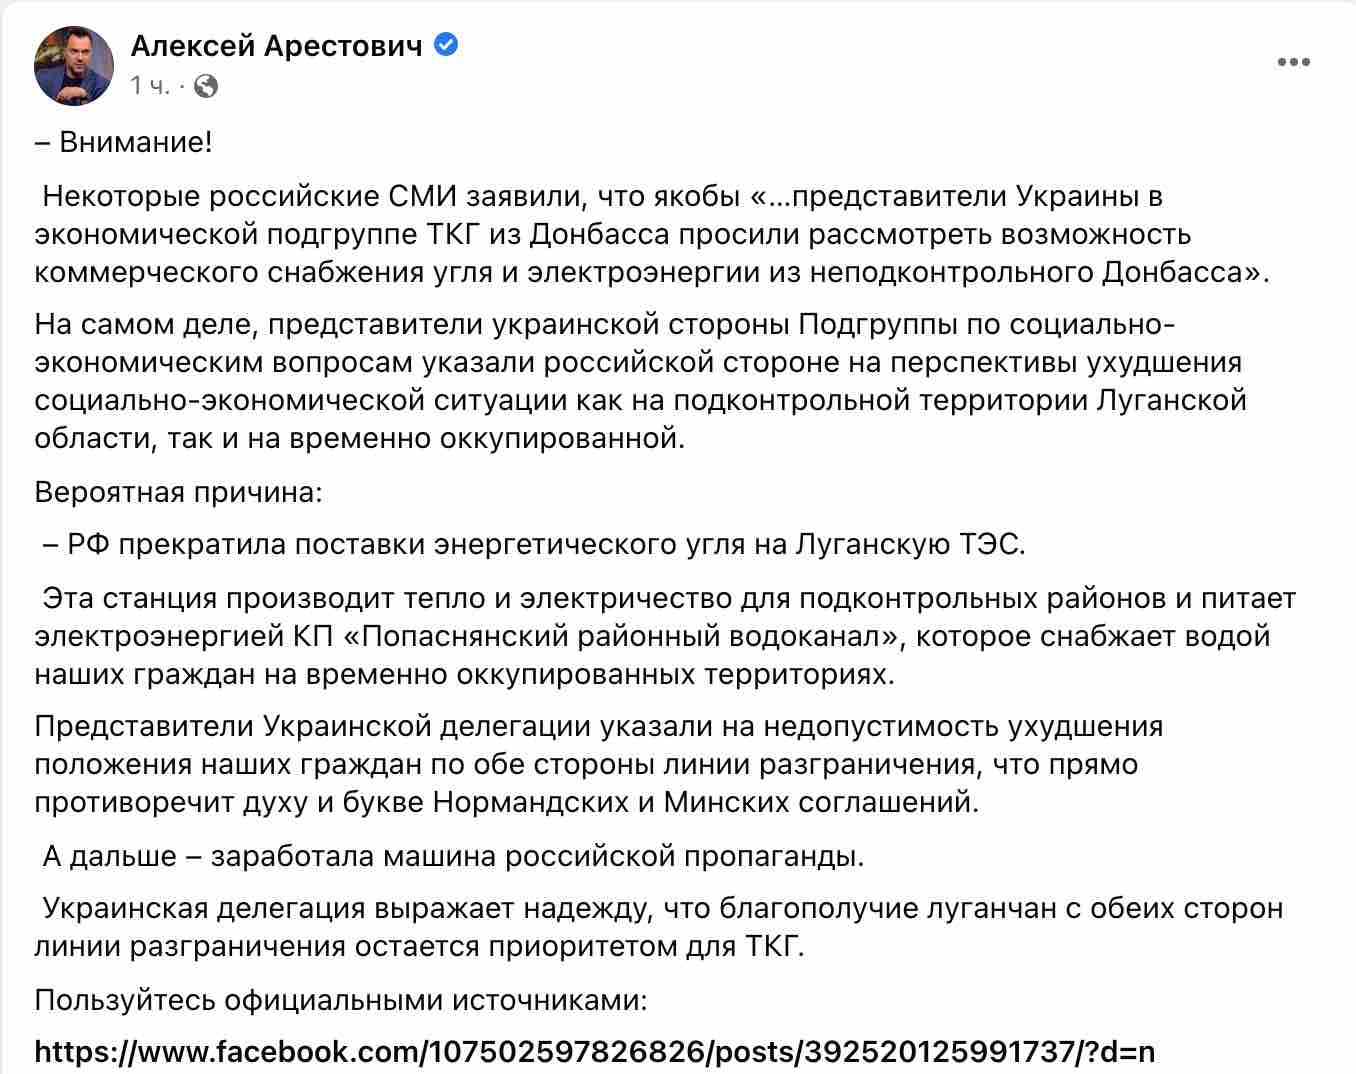 РосЗМІ розповсюджують фейк: Україна нібито попросила про постачання вугілля з ОРДЛО – Арестович